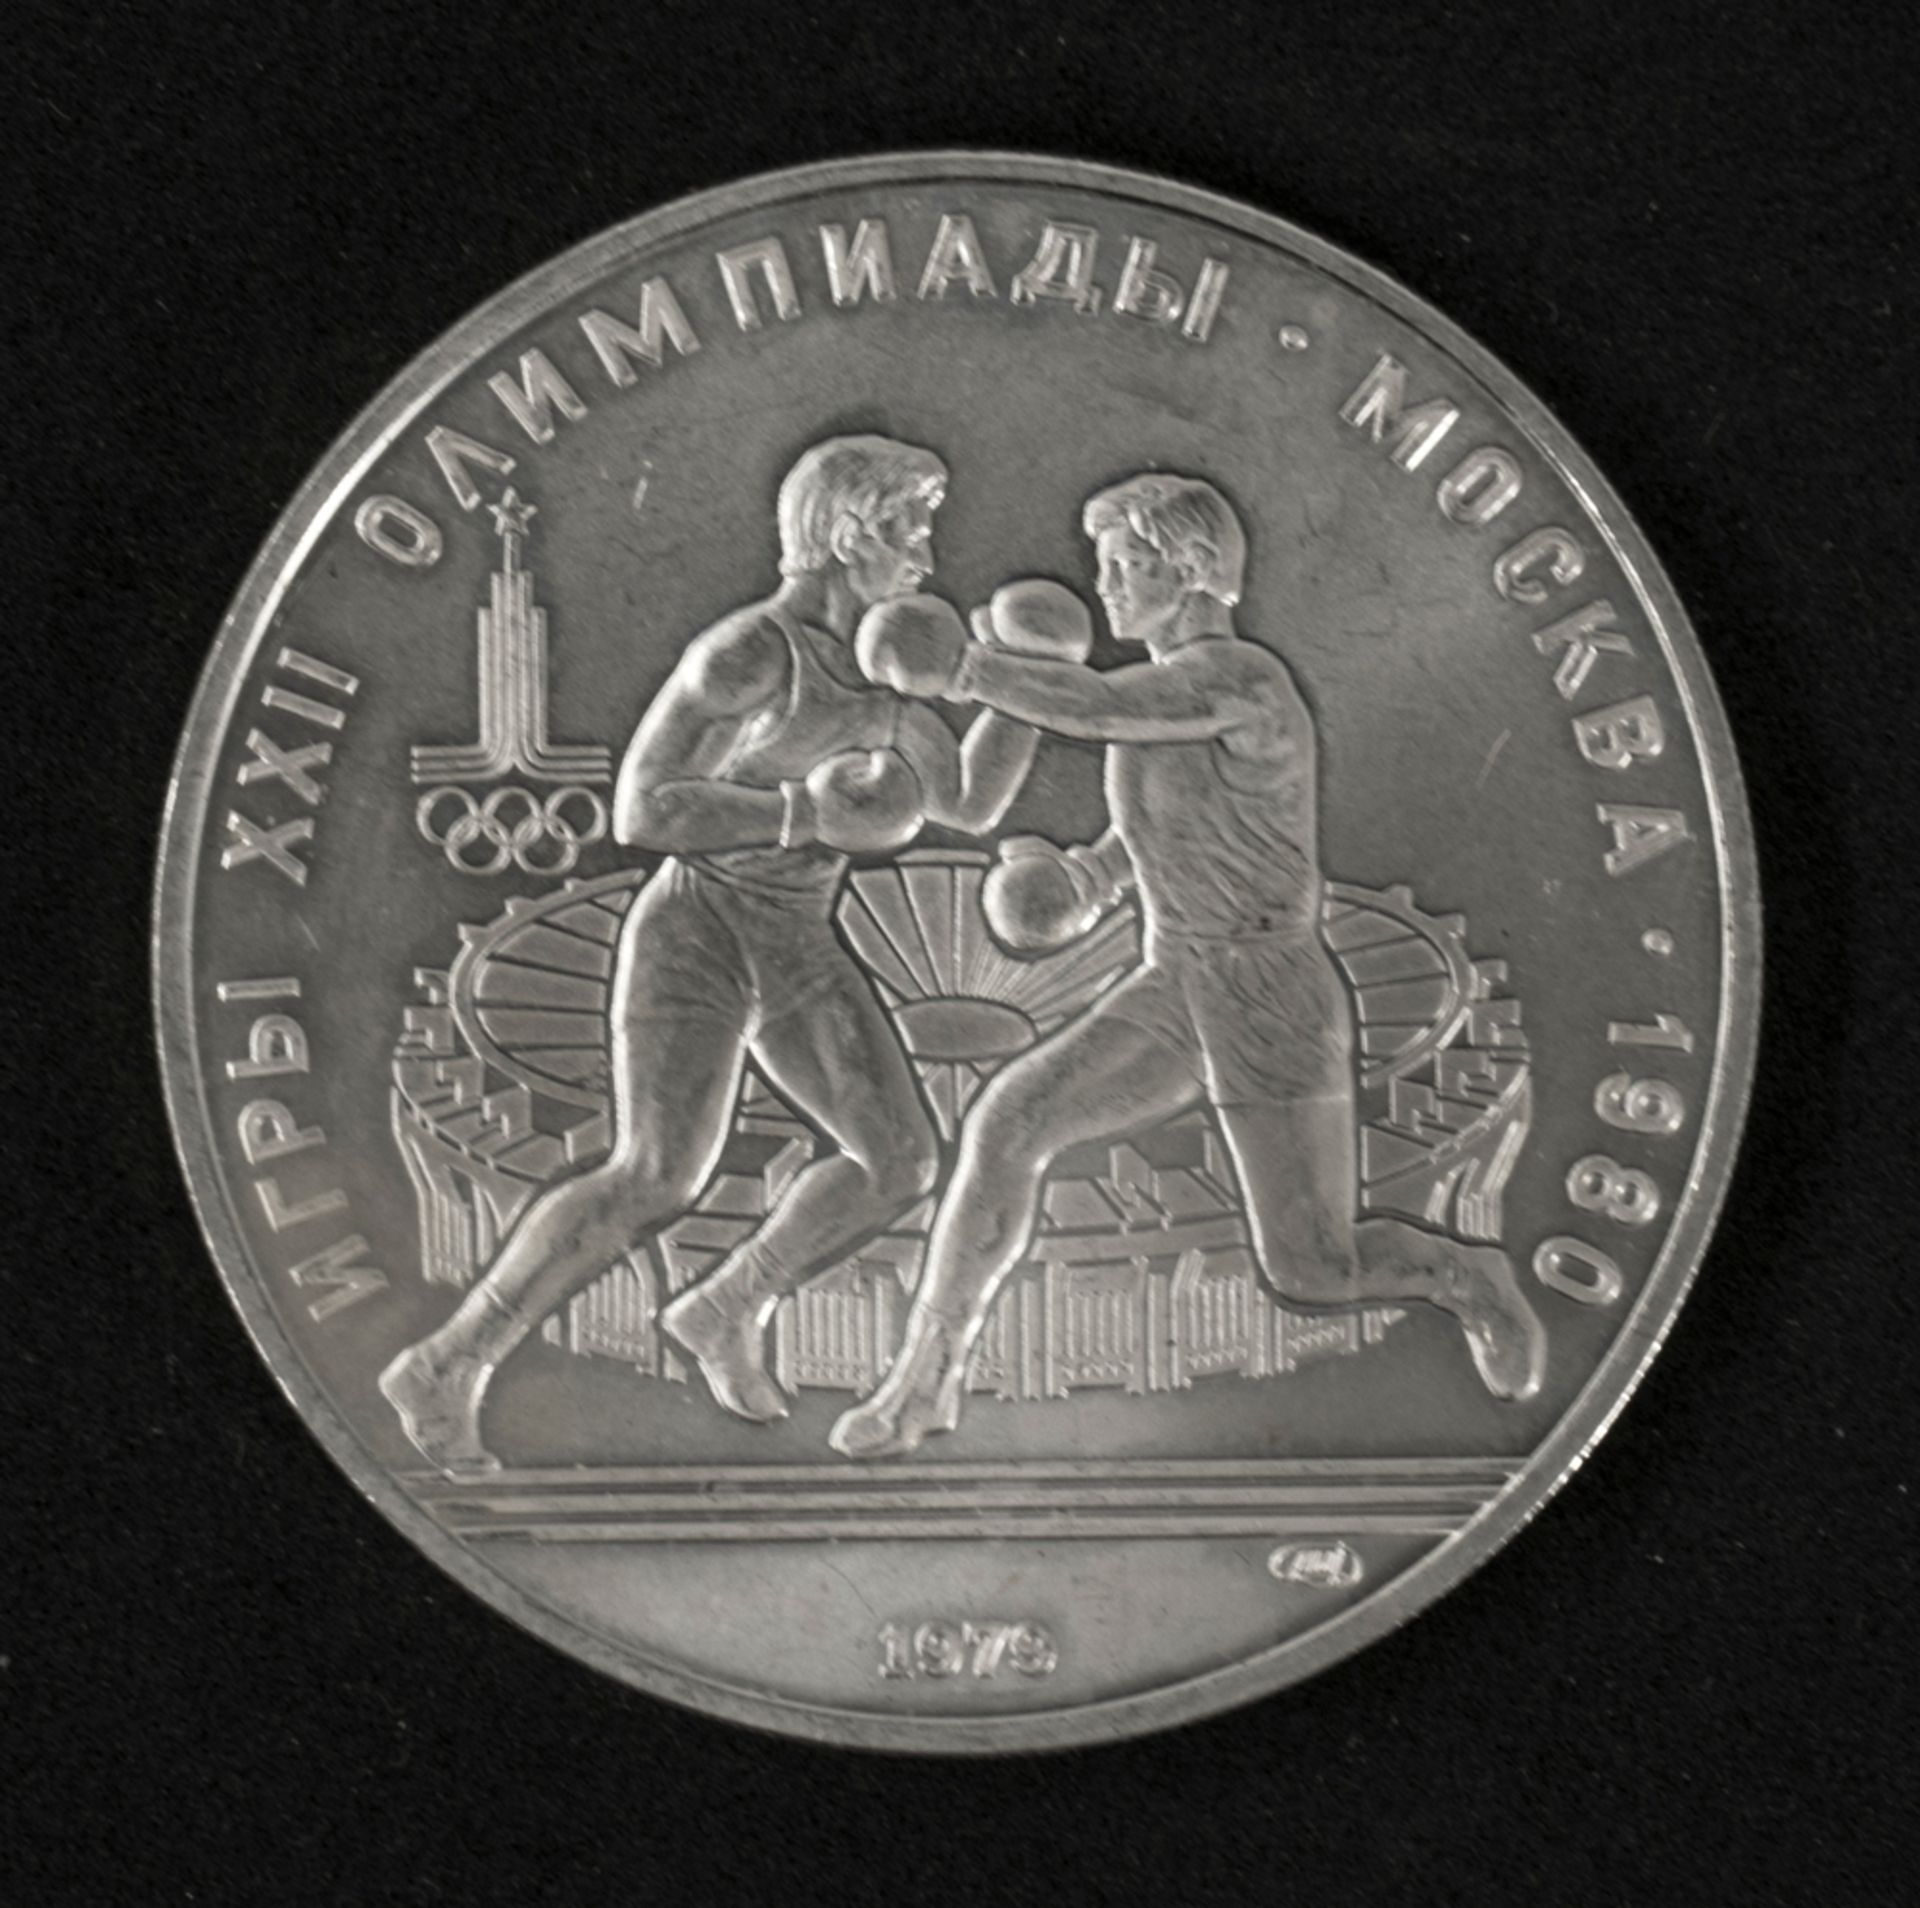 Sowjetunion 1979, 10 Rubel - Silbermünze, Olympische Spiele in Moskau - Boxen. Erhaltung: vz.